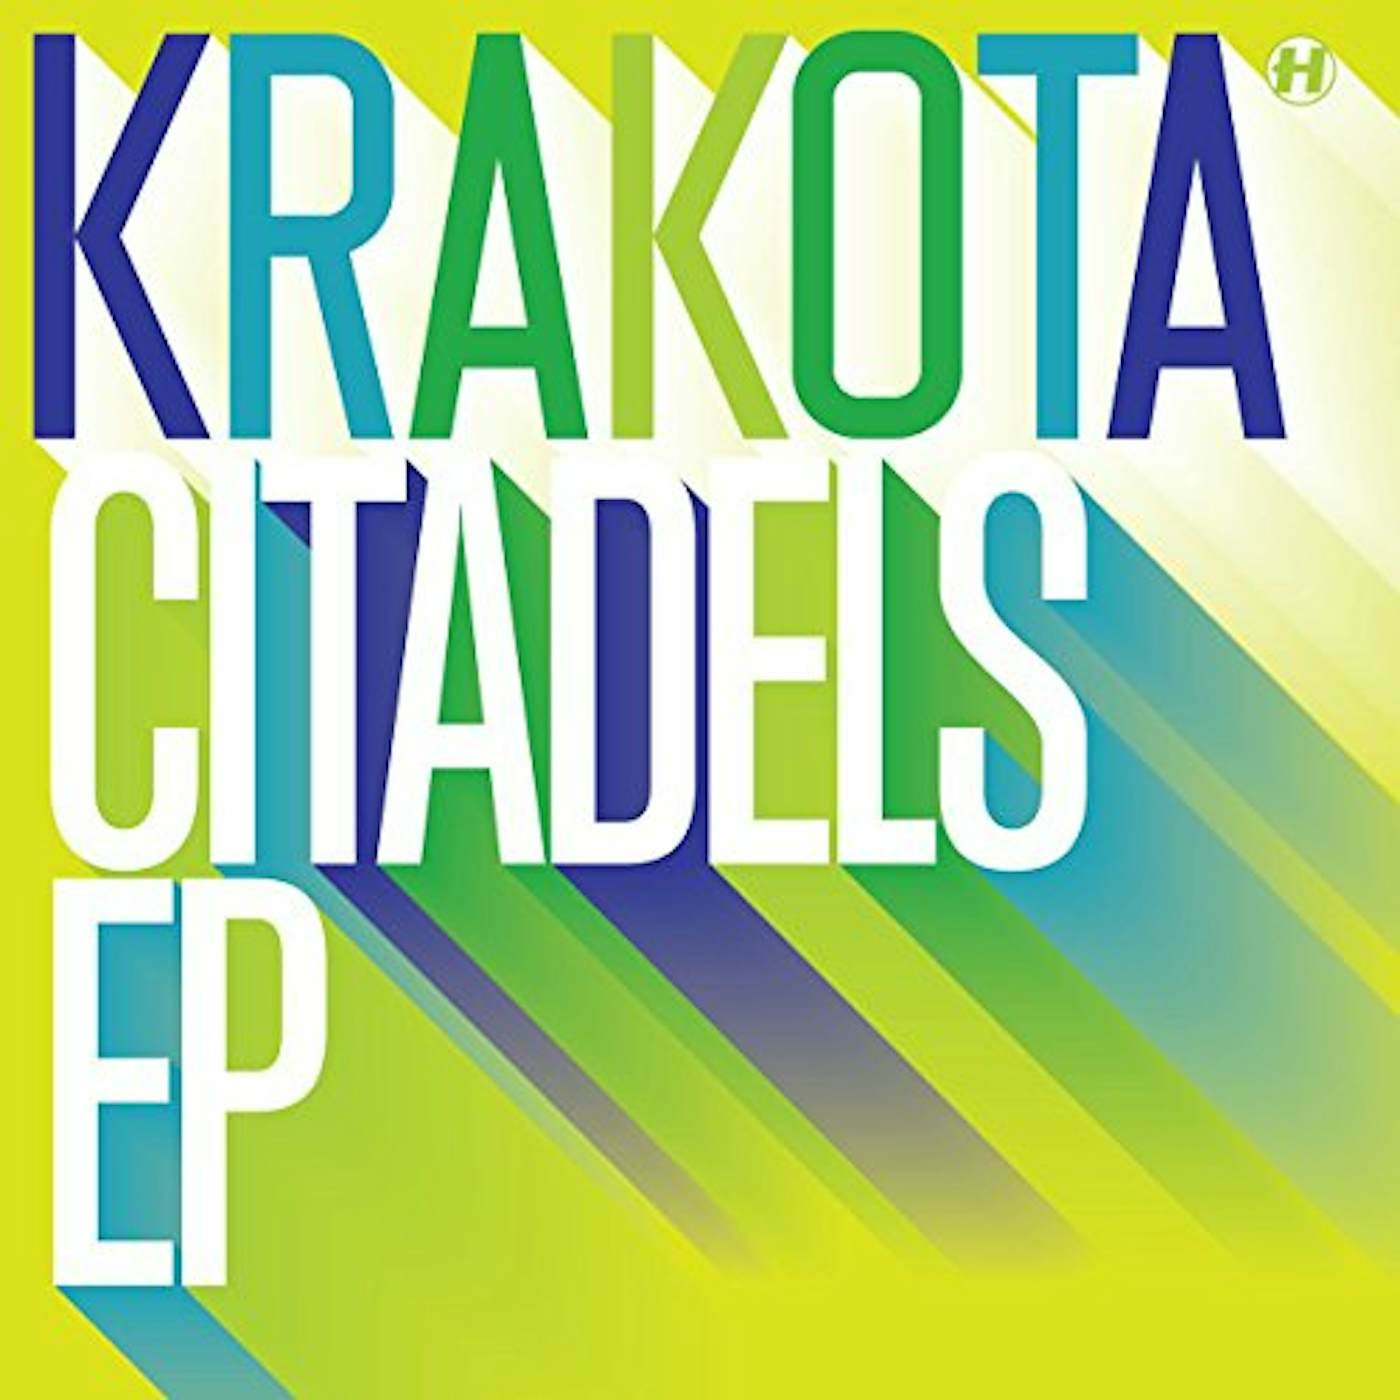 Krakota Citadels Vinyl Record